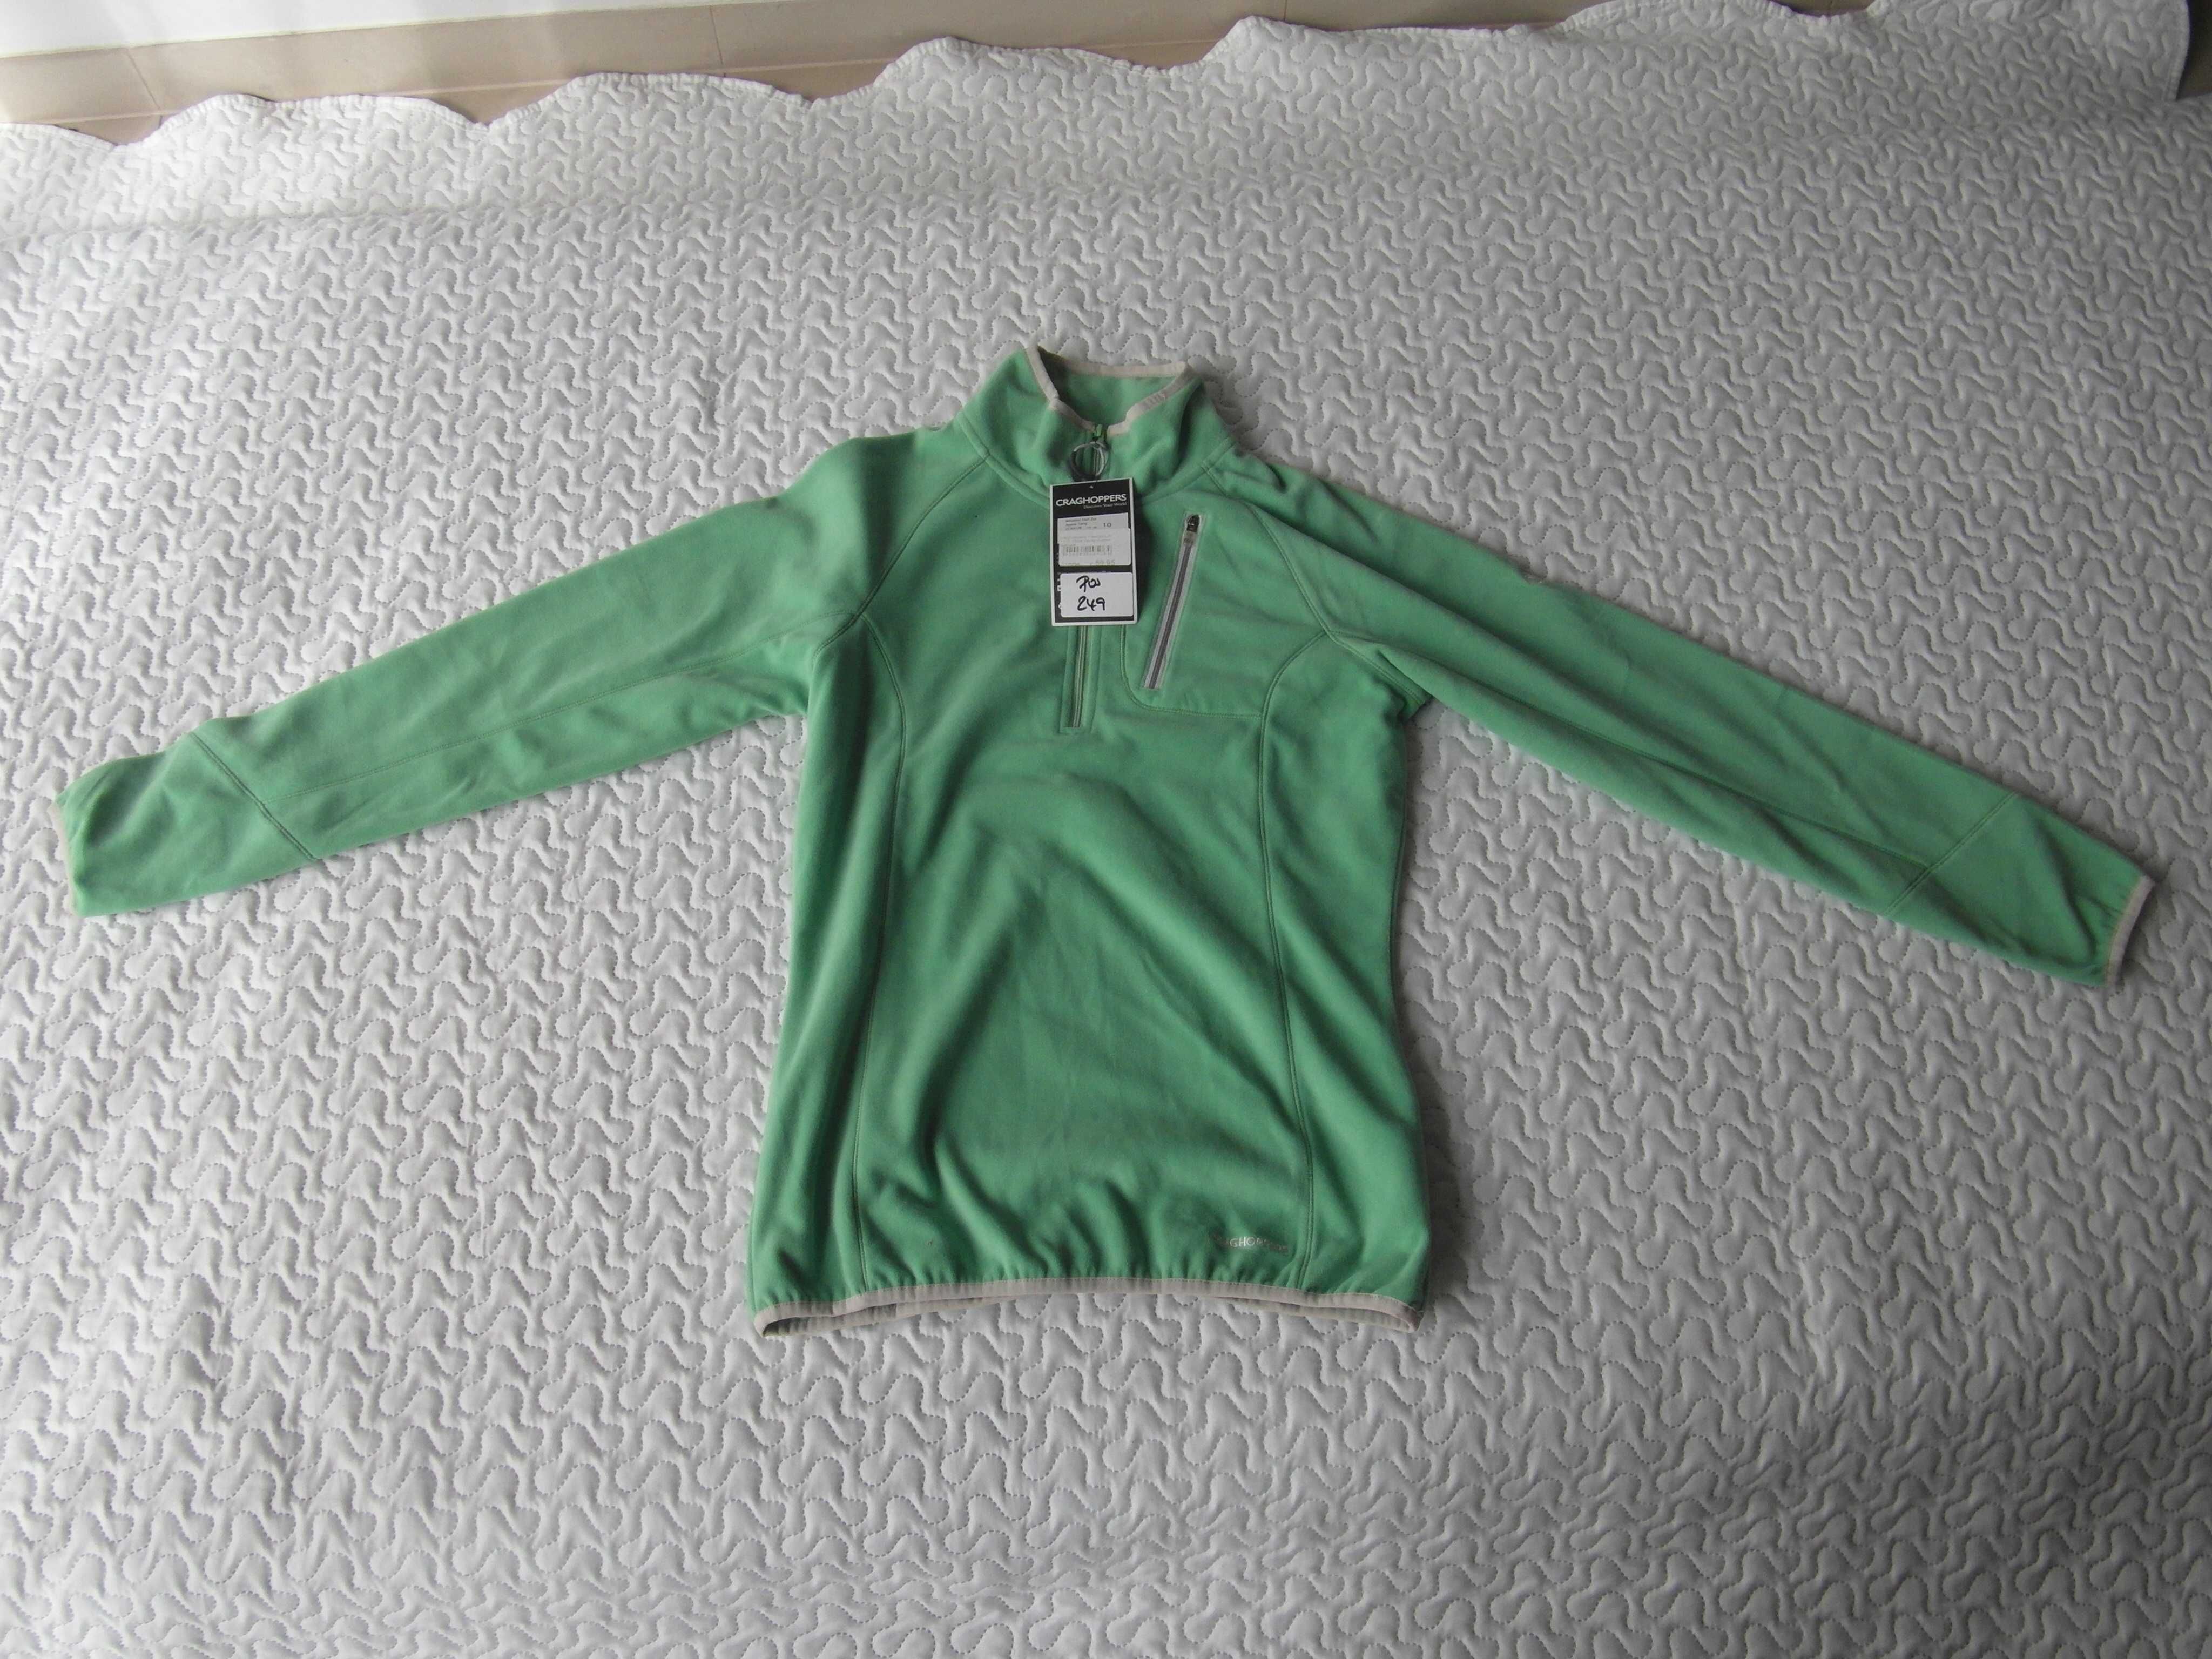 Damska bluza polarowa Craghoppers z zamkiem pod szyją; rozmiar 36;